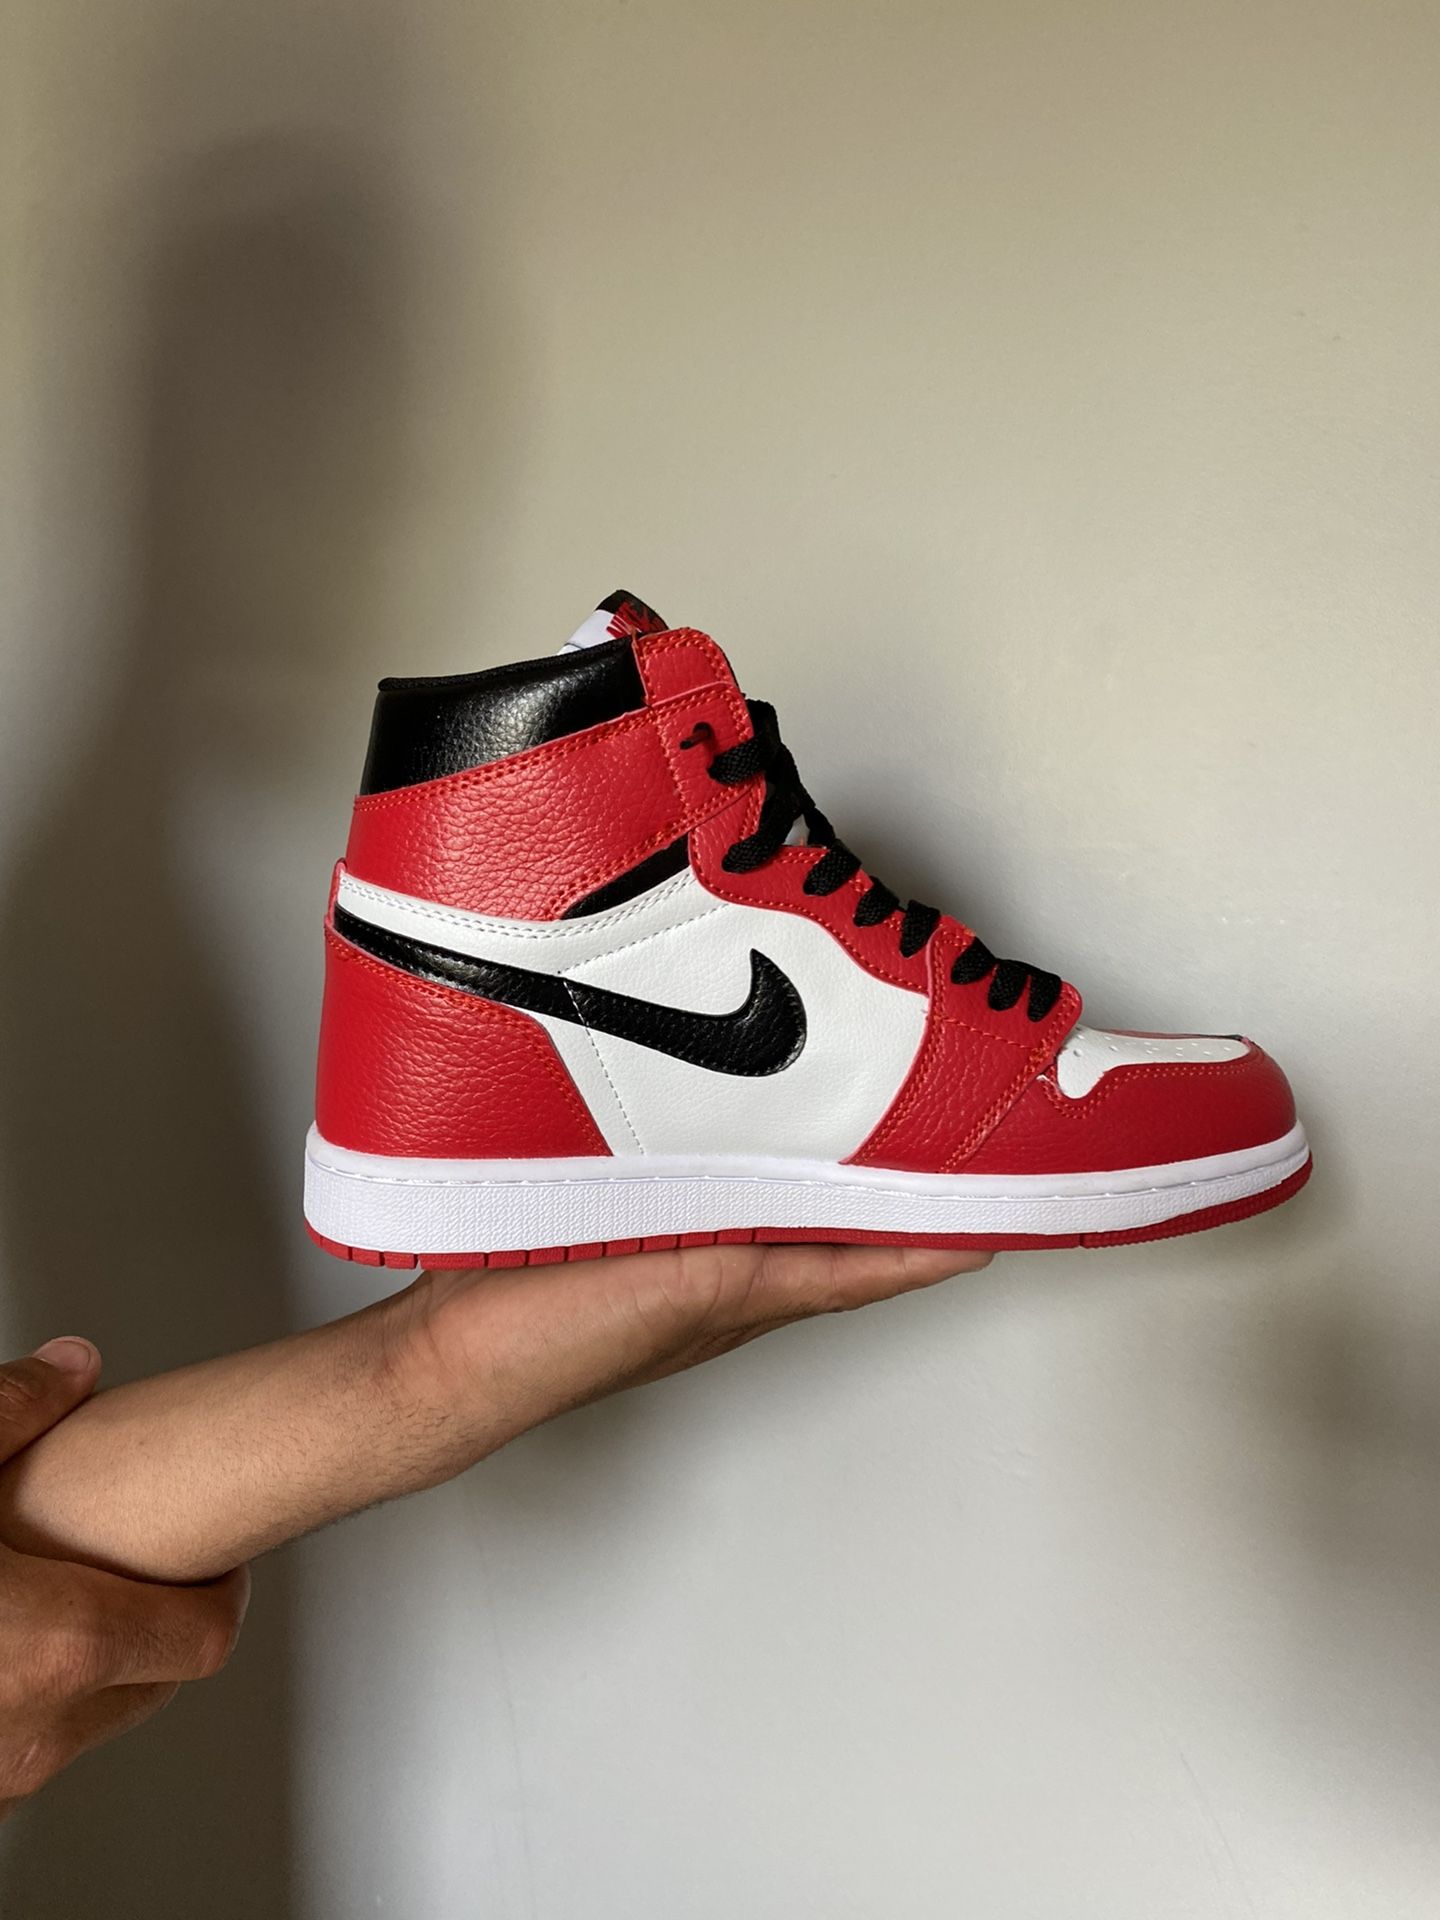 Jordan 1 Size 8.5